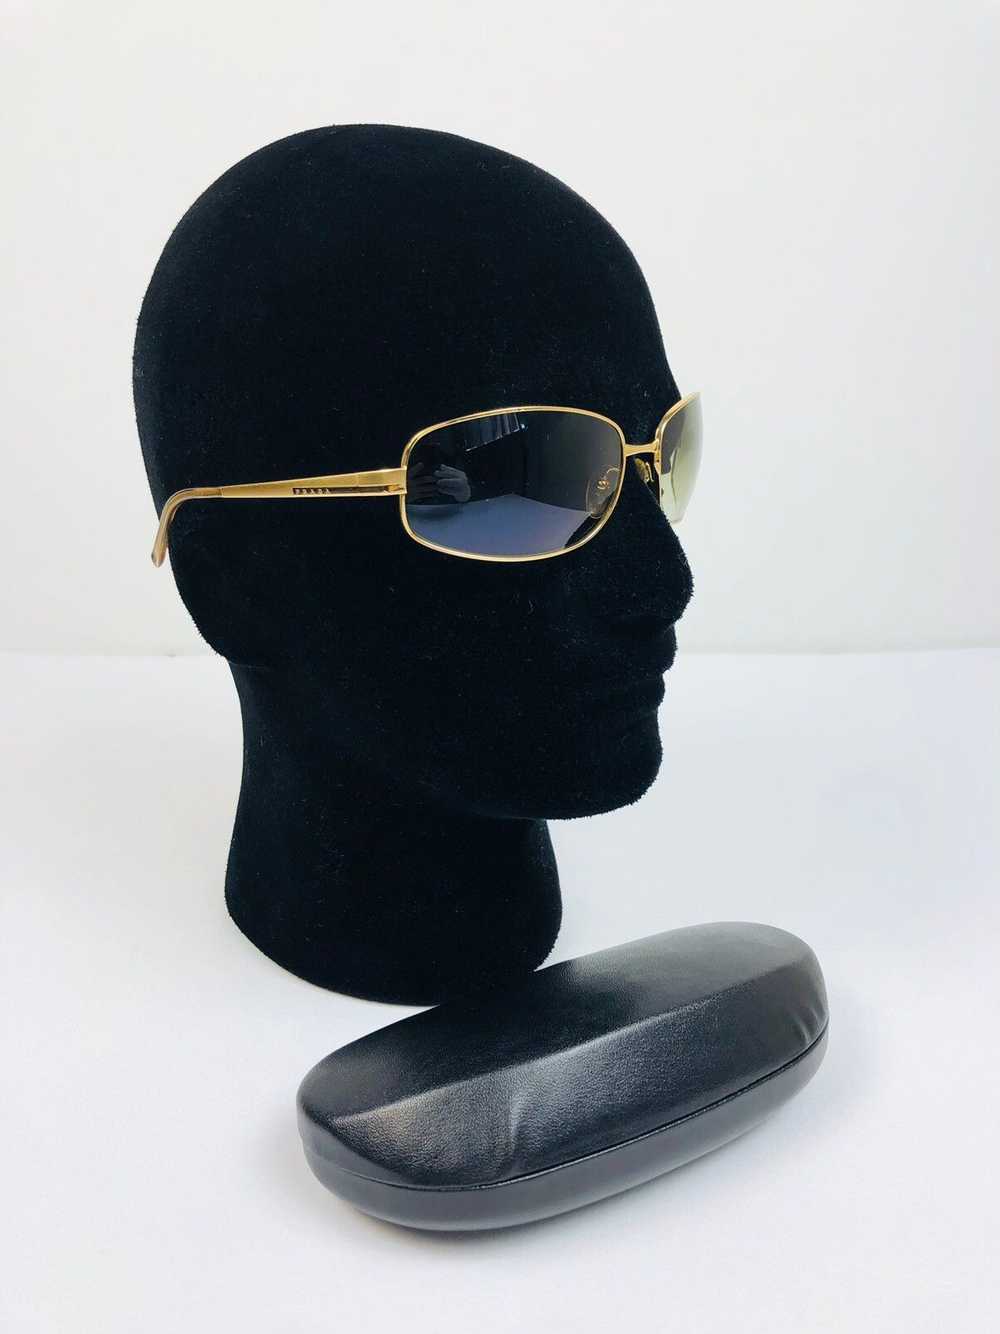 Prada Prada logo sunglasses - image 1